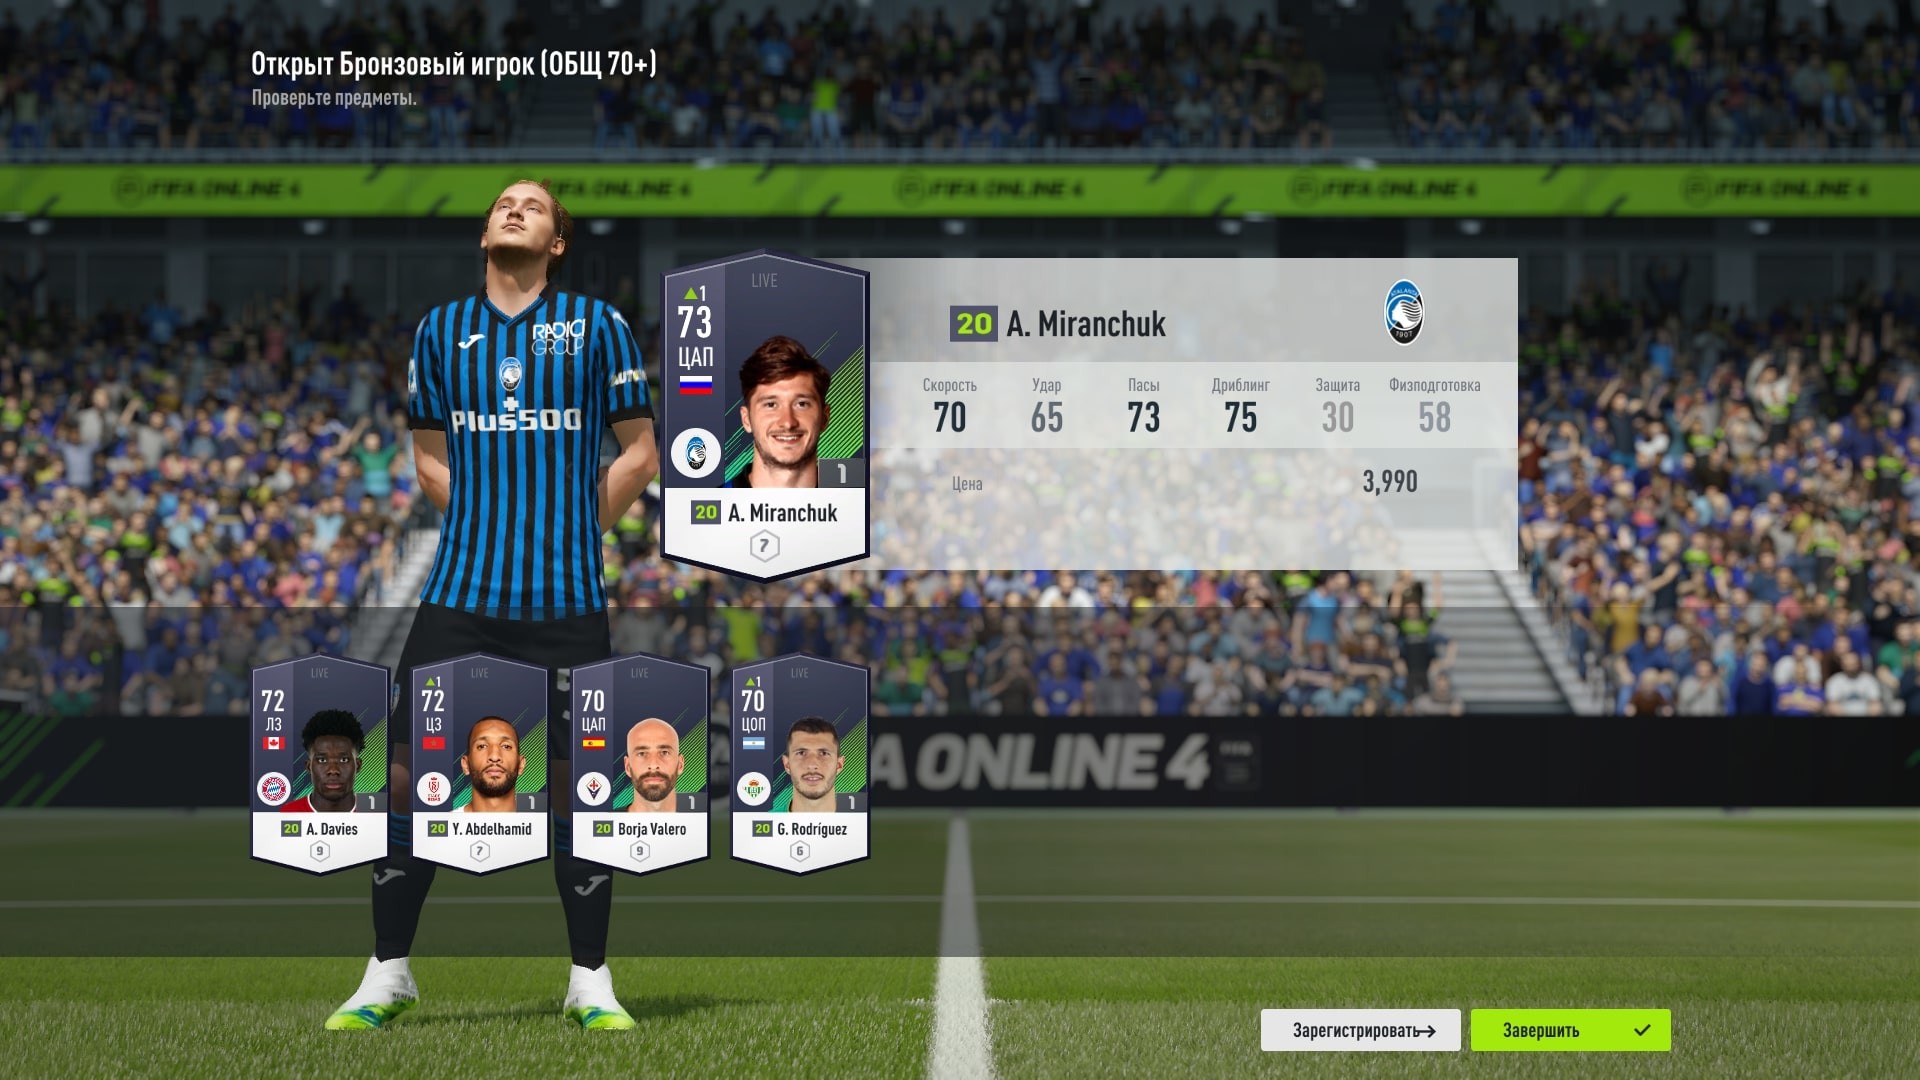 Мы поиграли в бета-версию FIFA Online 4. Это гача-футбол